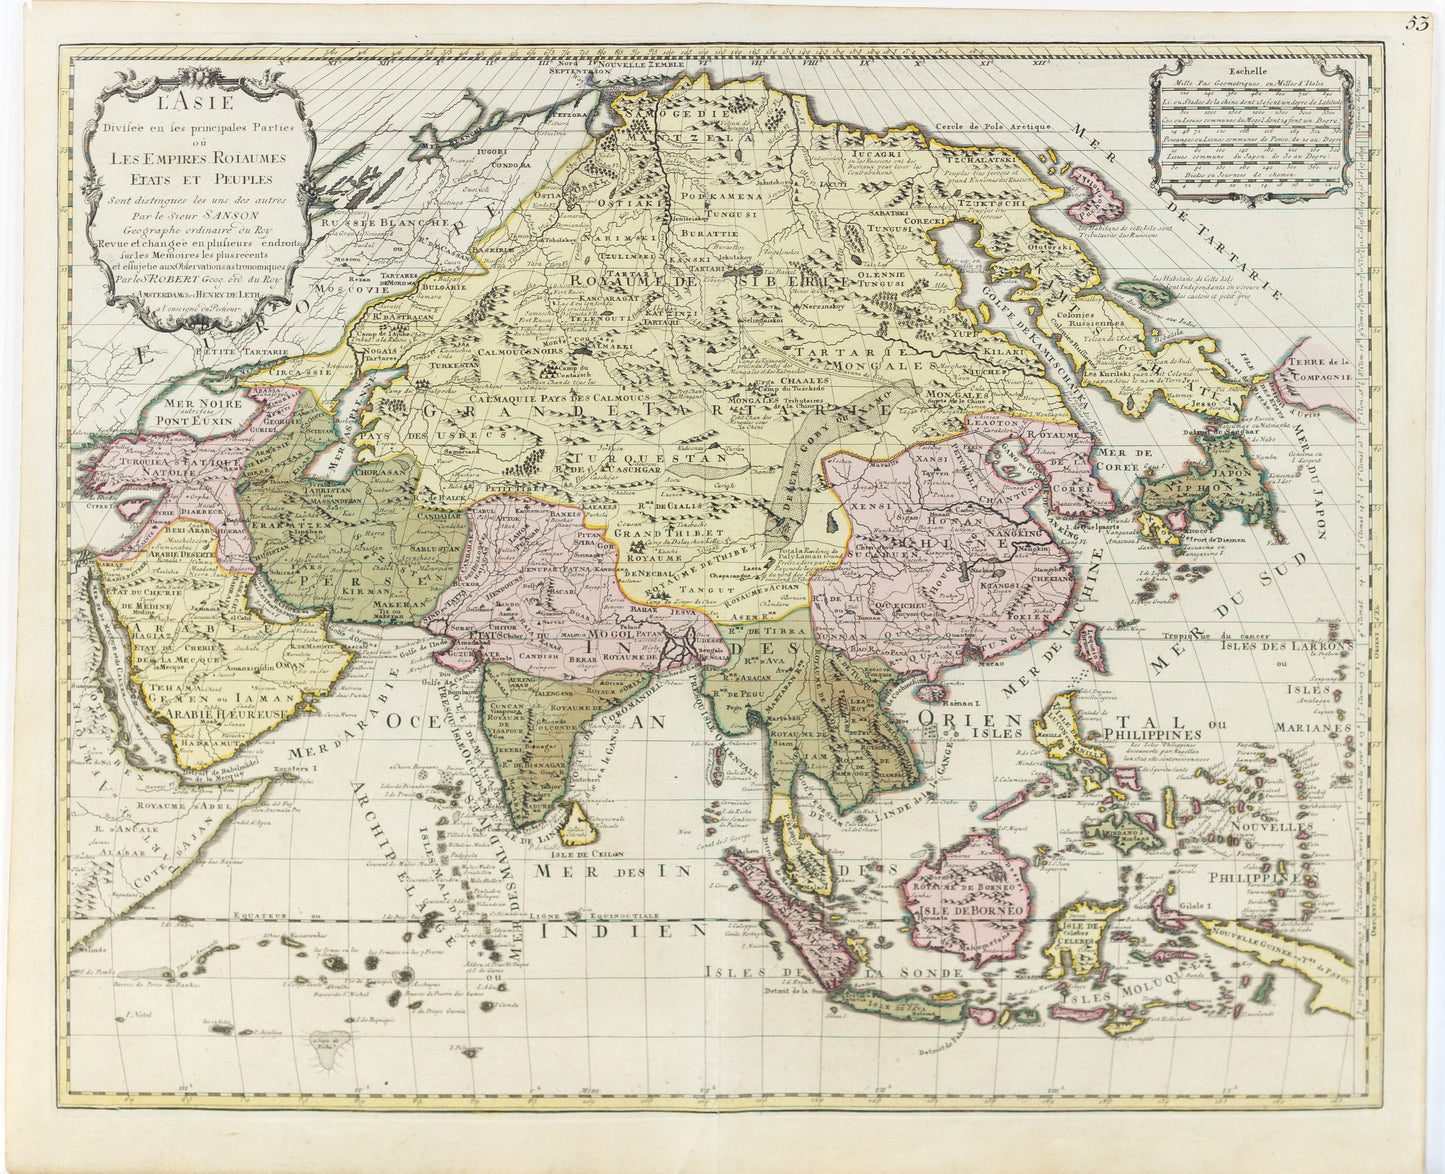 de Vaugondy, Sir Robert. L'Asie divisee en les principales parties ou les empires roiaumes etates et peuples. Paris, 1750.